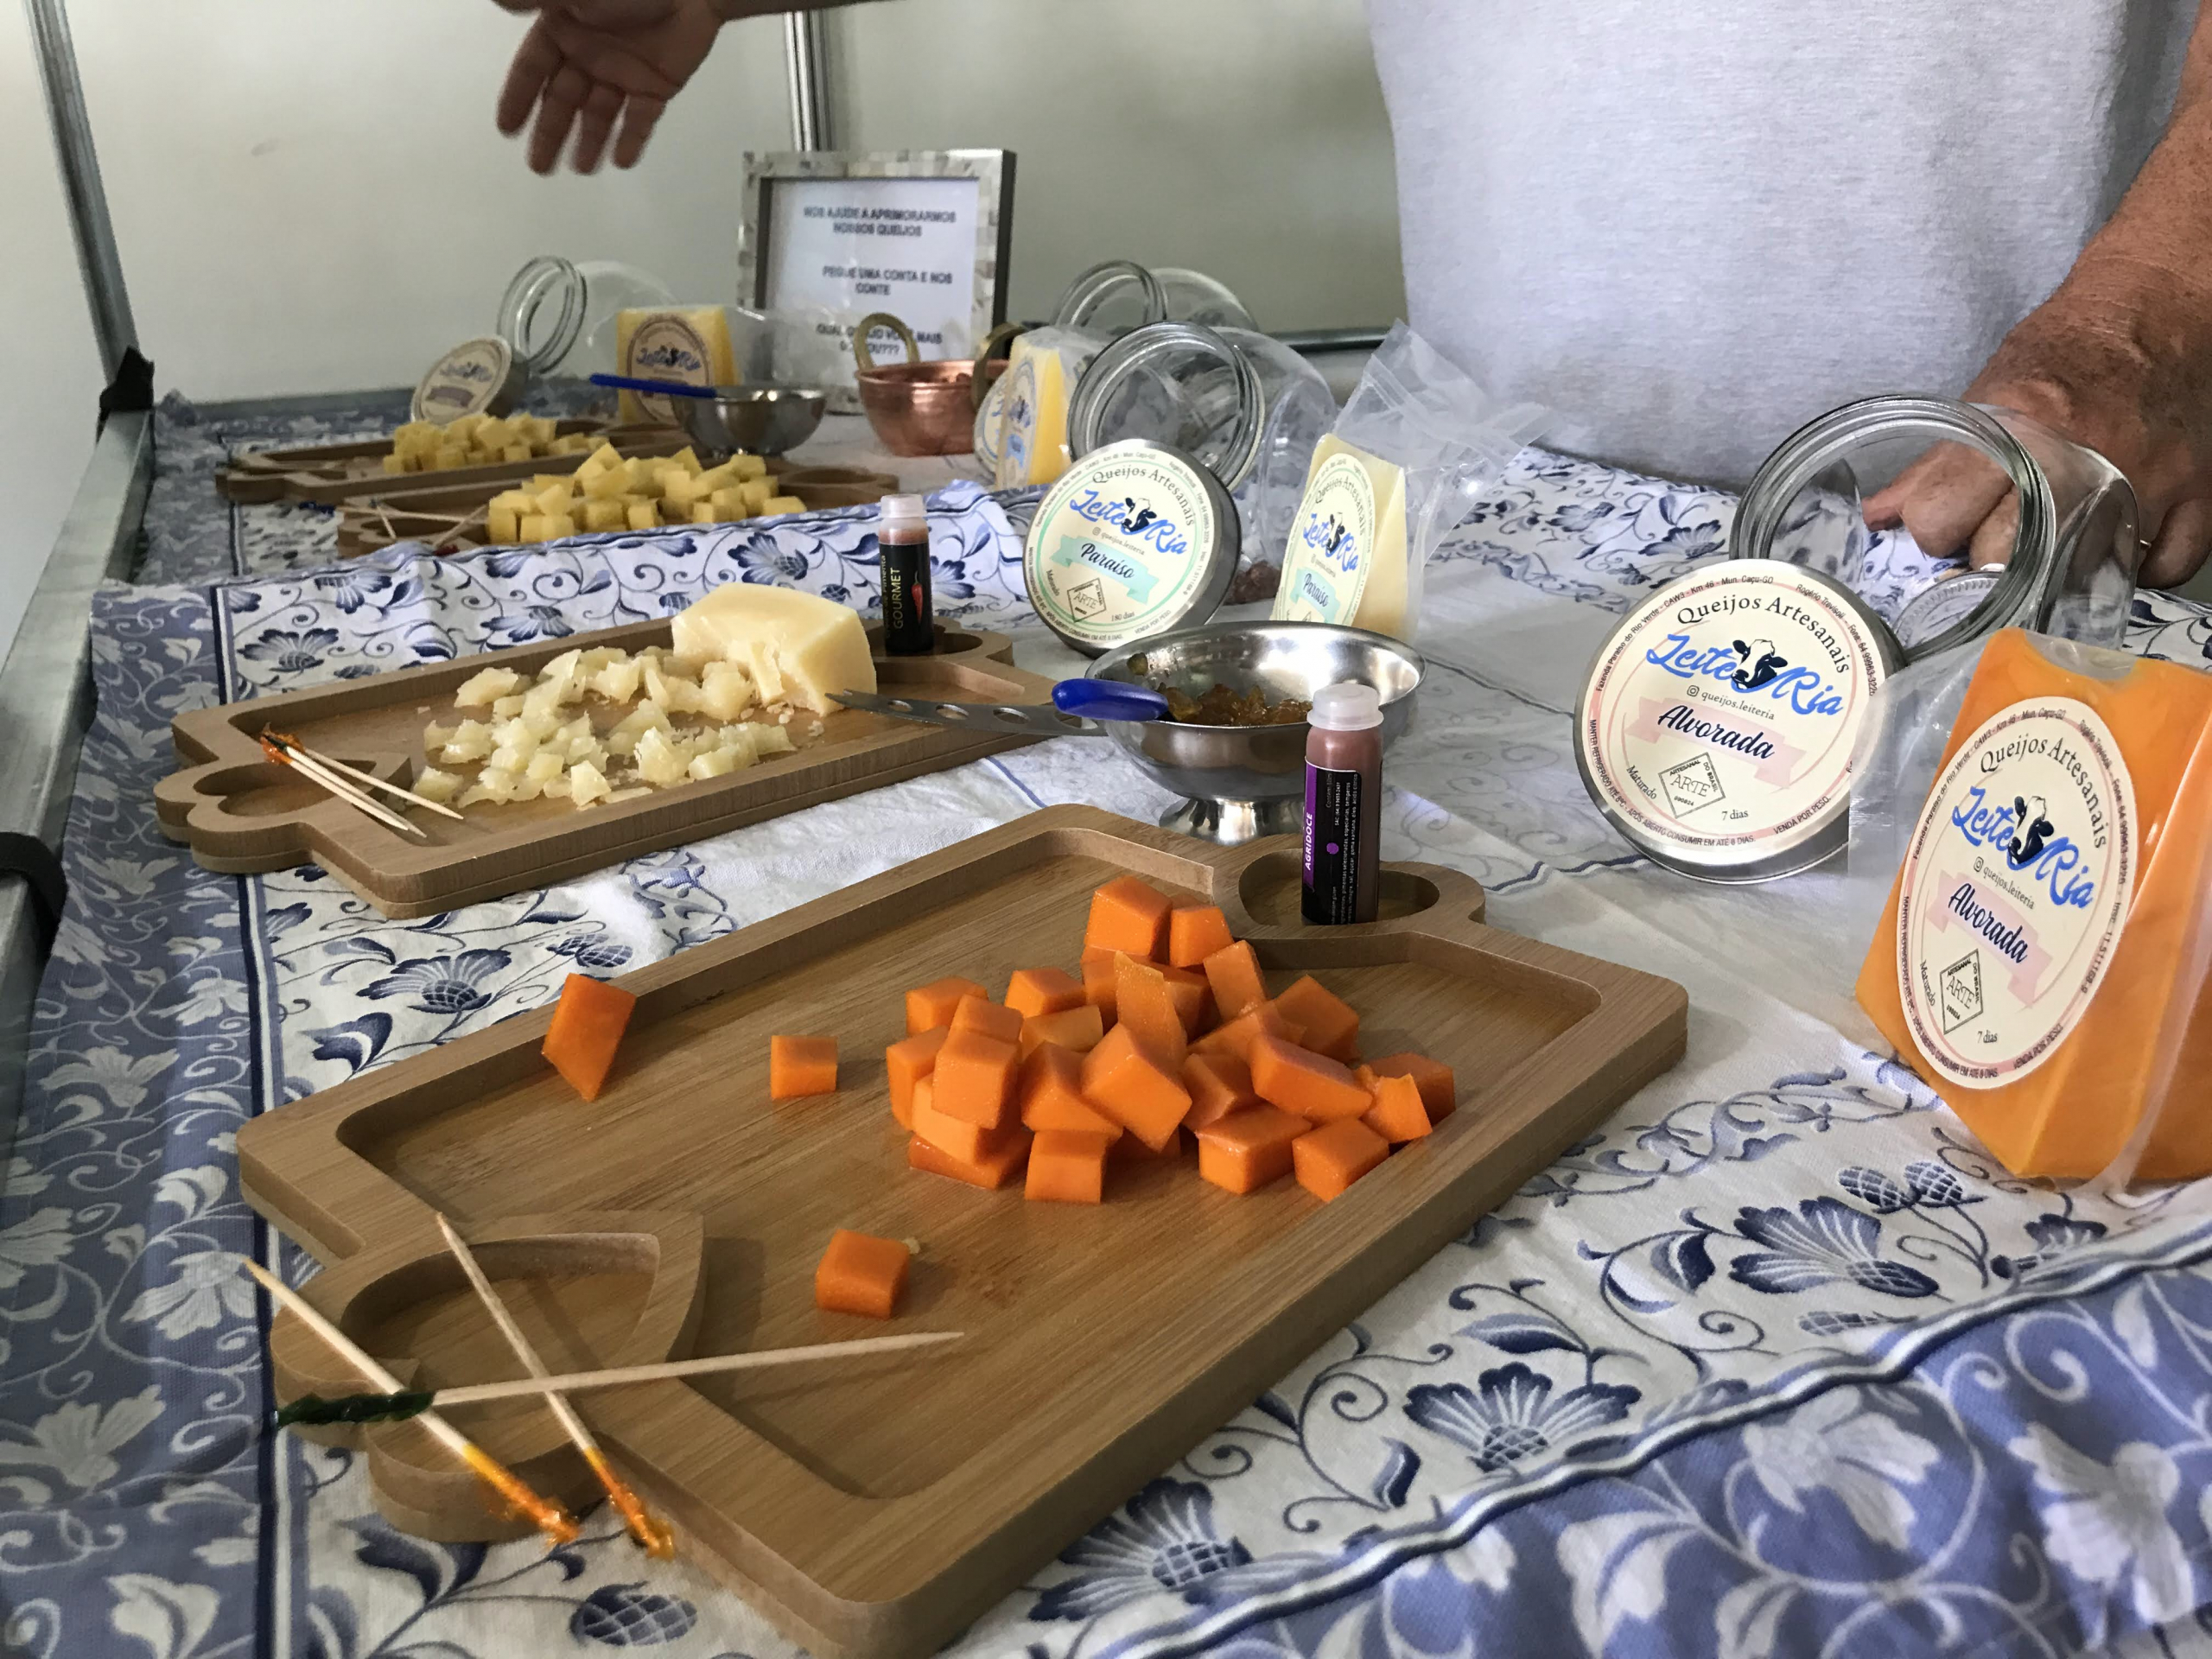 Goiânia ganha primeira casa especializada em queijos - OQueRola